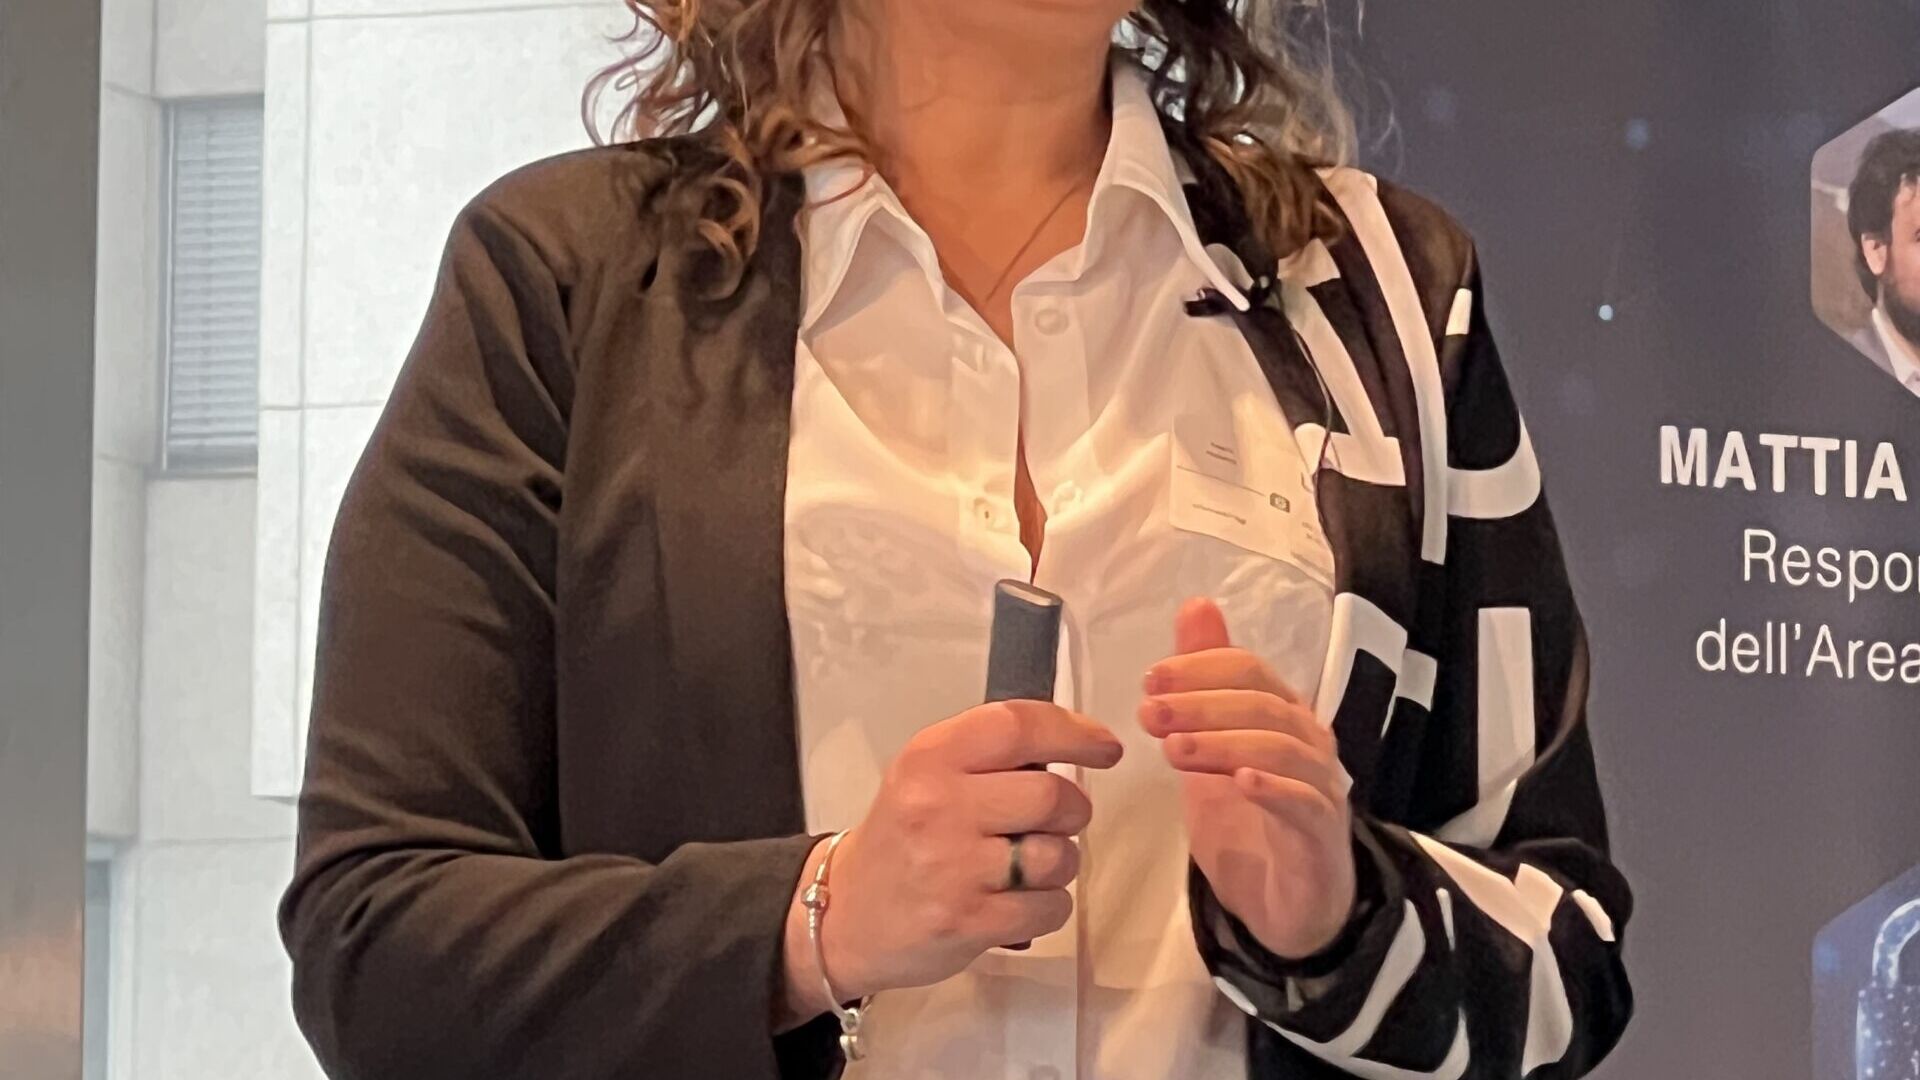 Dati personali: Angela Pedalina, giurista e socia di Informatich Sagl. è stata una delle relatrici all’edizione 2023 dello “LPD Day” di Lugano il 24 marzo 2023